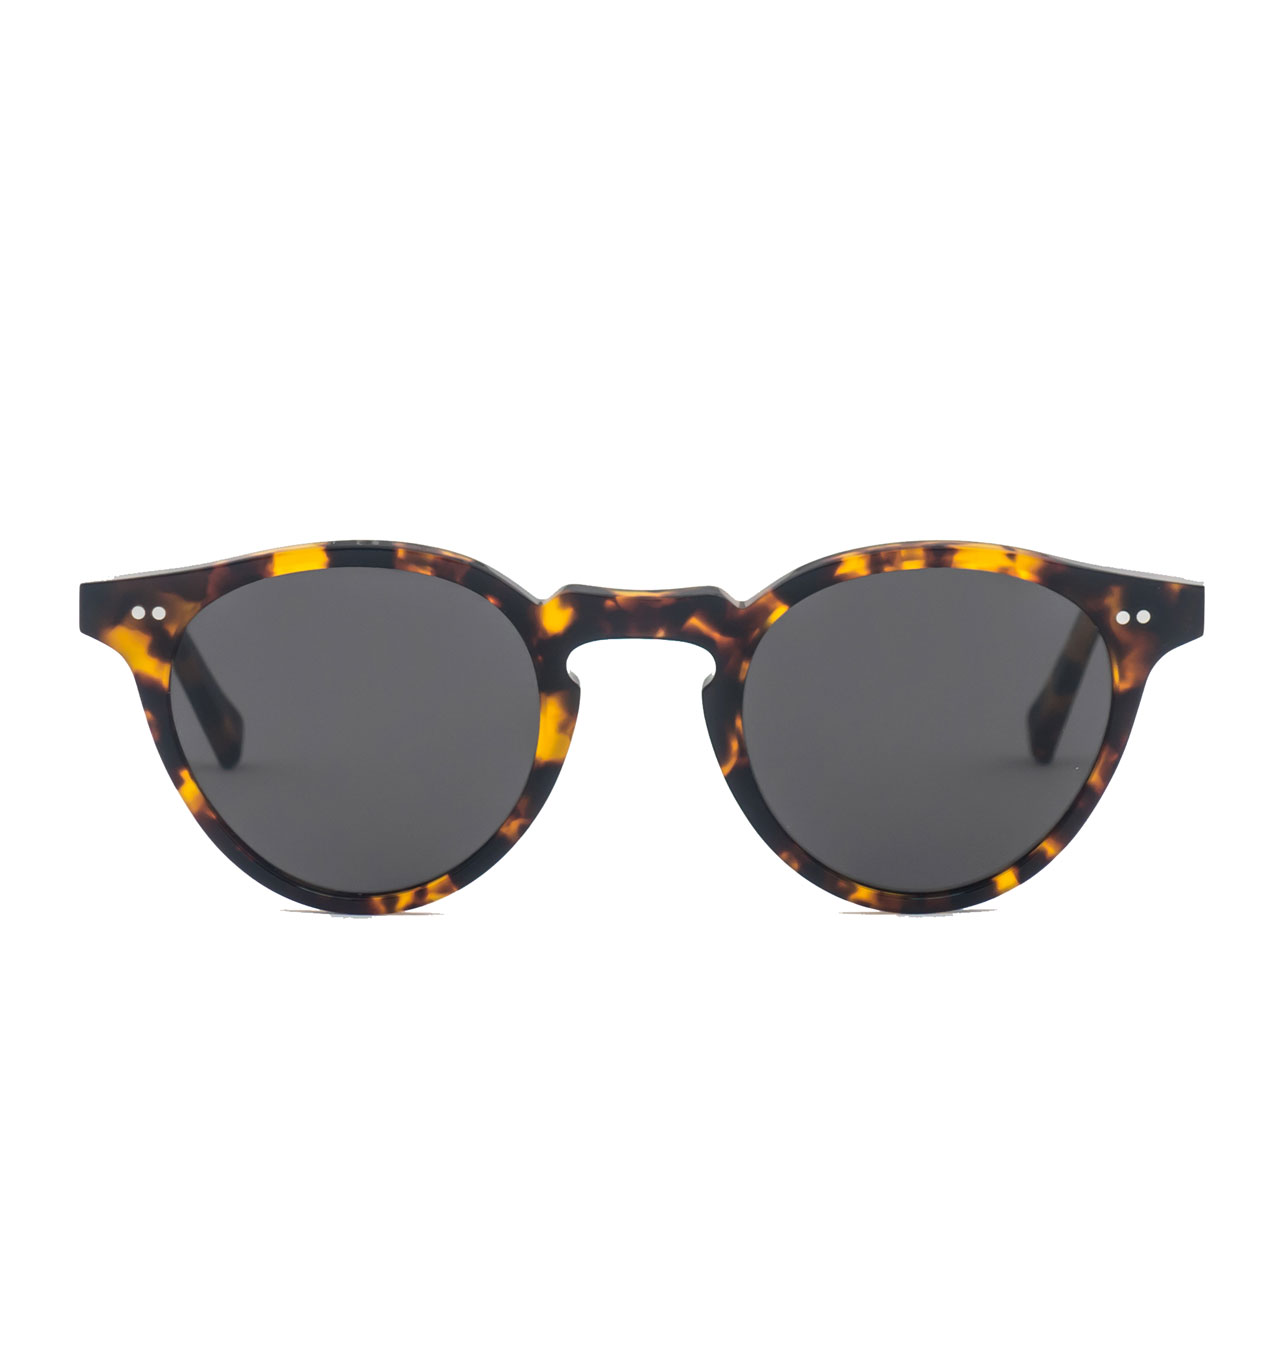 Monokel Eyewear - Forest Havana Sunglasses - Grey Solid Lens